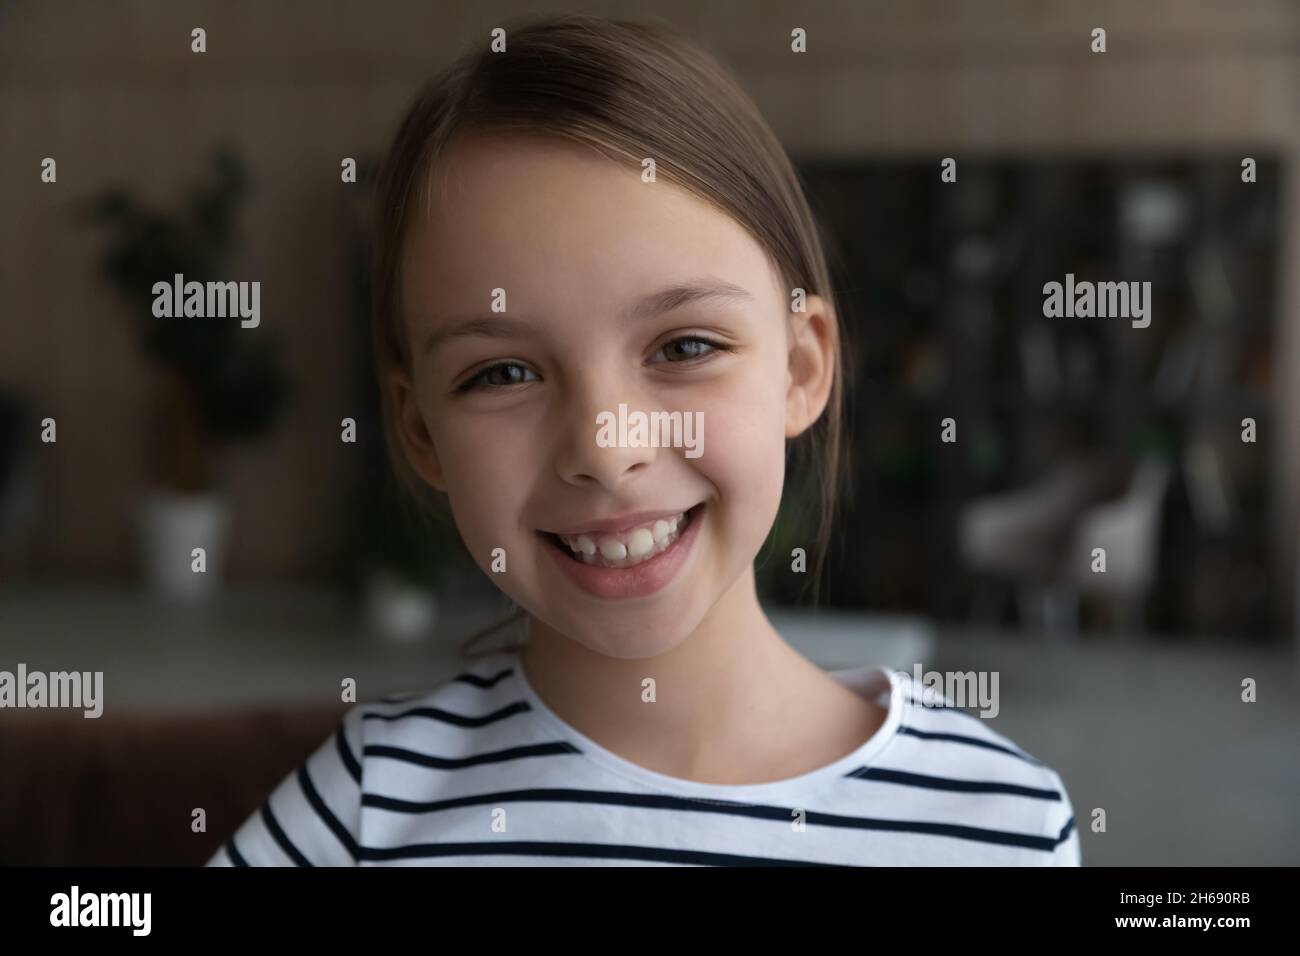 Testa ritratto di sorridente ragazza bambino guardando la macchina fotografica Foto Stock